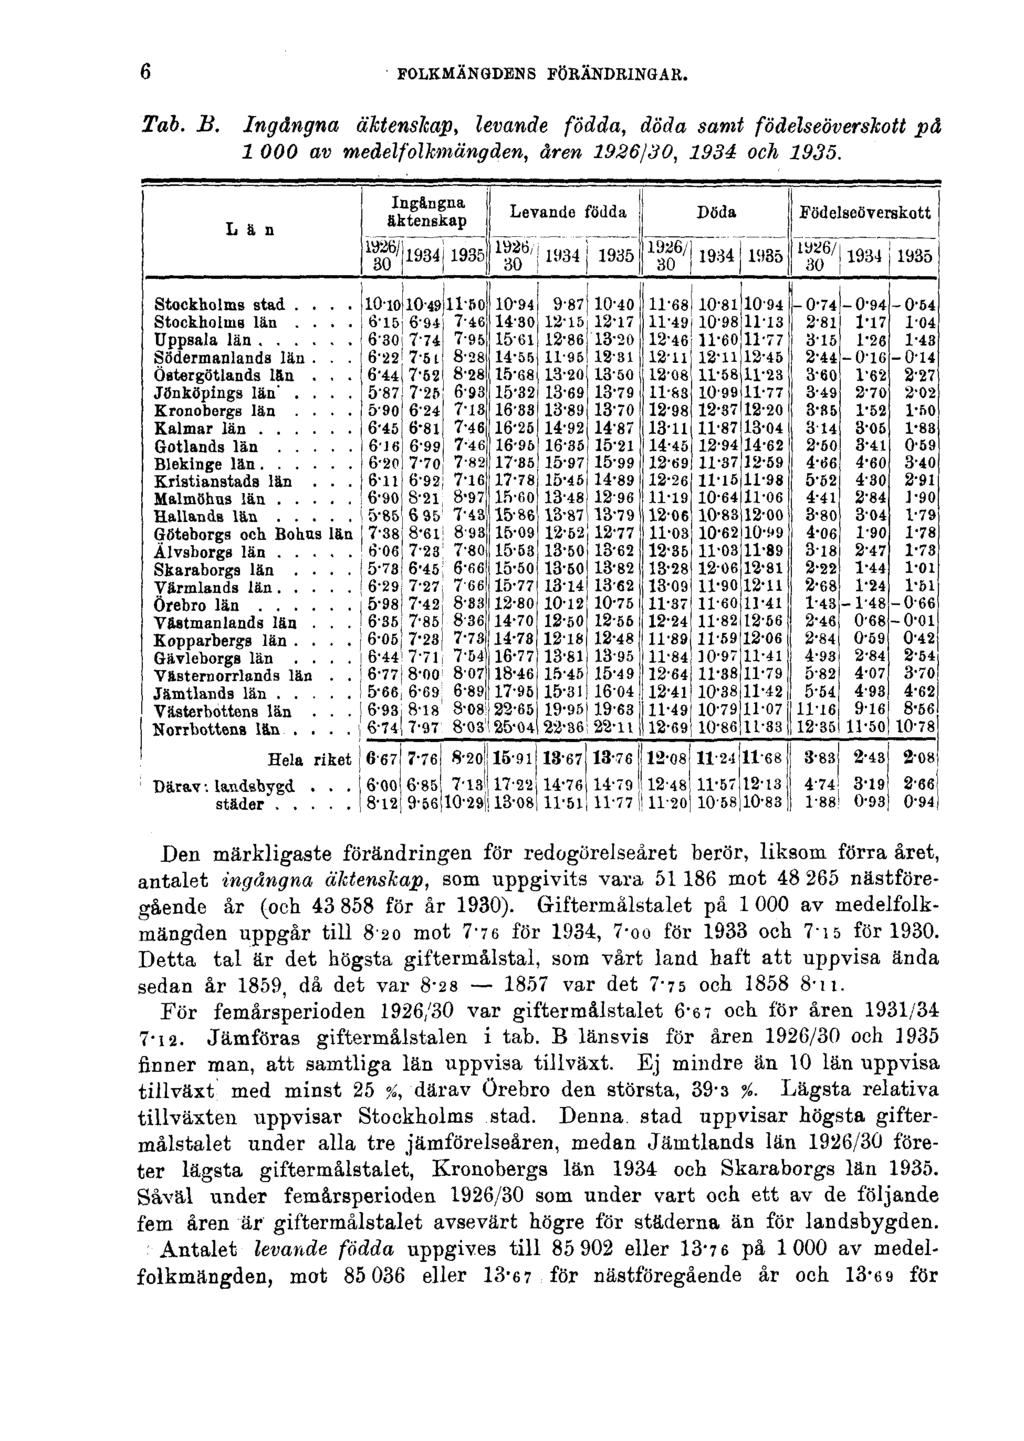 6 FOLKMÄNGDENS FÖRÄNDRINGAR. Tab. B. Ingångna äktenskap, levande födda, döda samt födelseöverskott på 1000 av medelfolkmängden, åren 1926/30, 1934 och 1935.